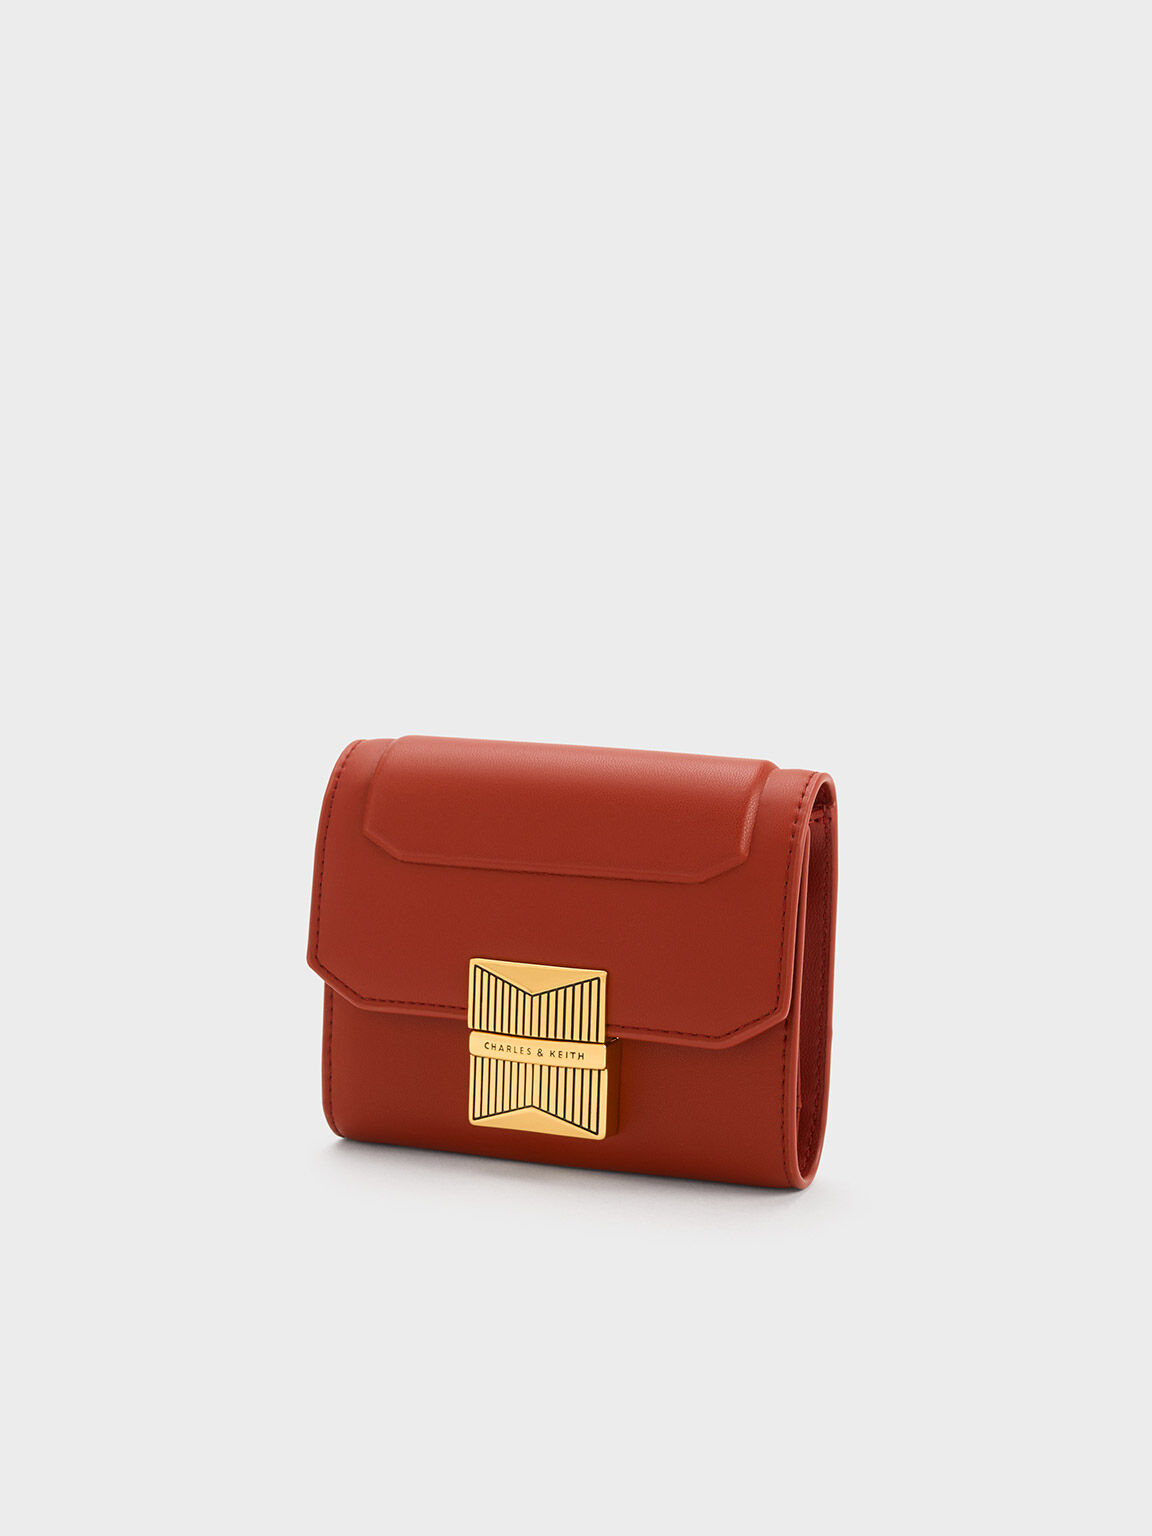 Kalinda 磁釦三摺短夾, 磚紅色, hi-res